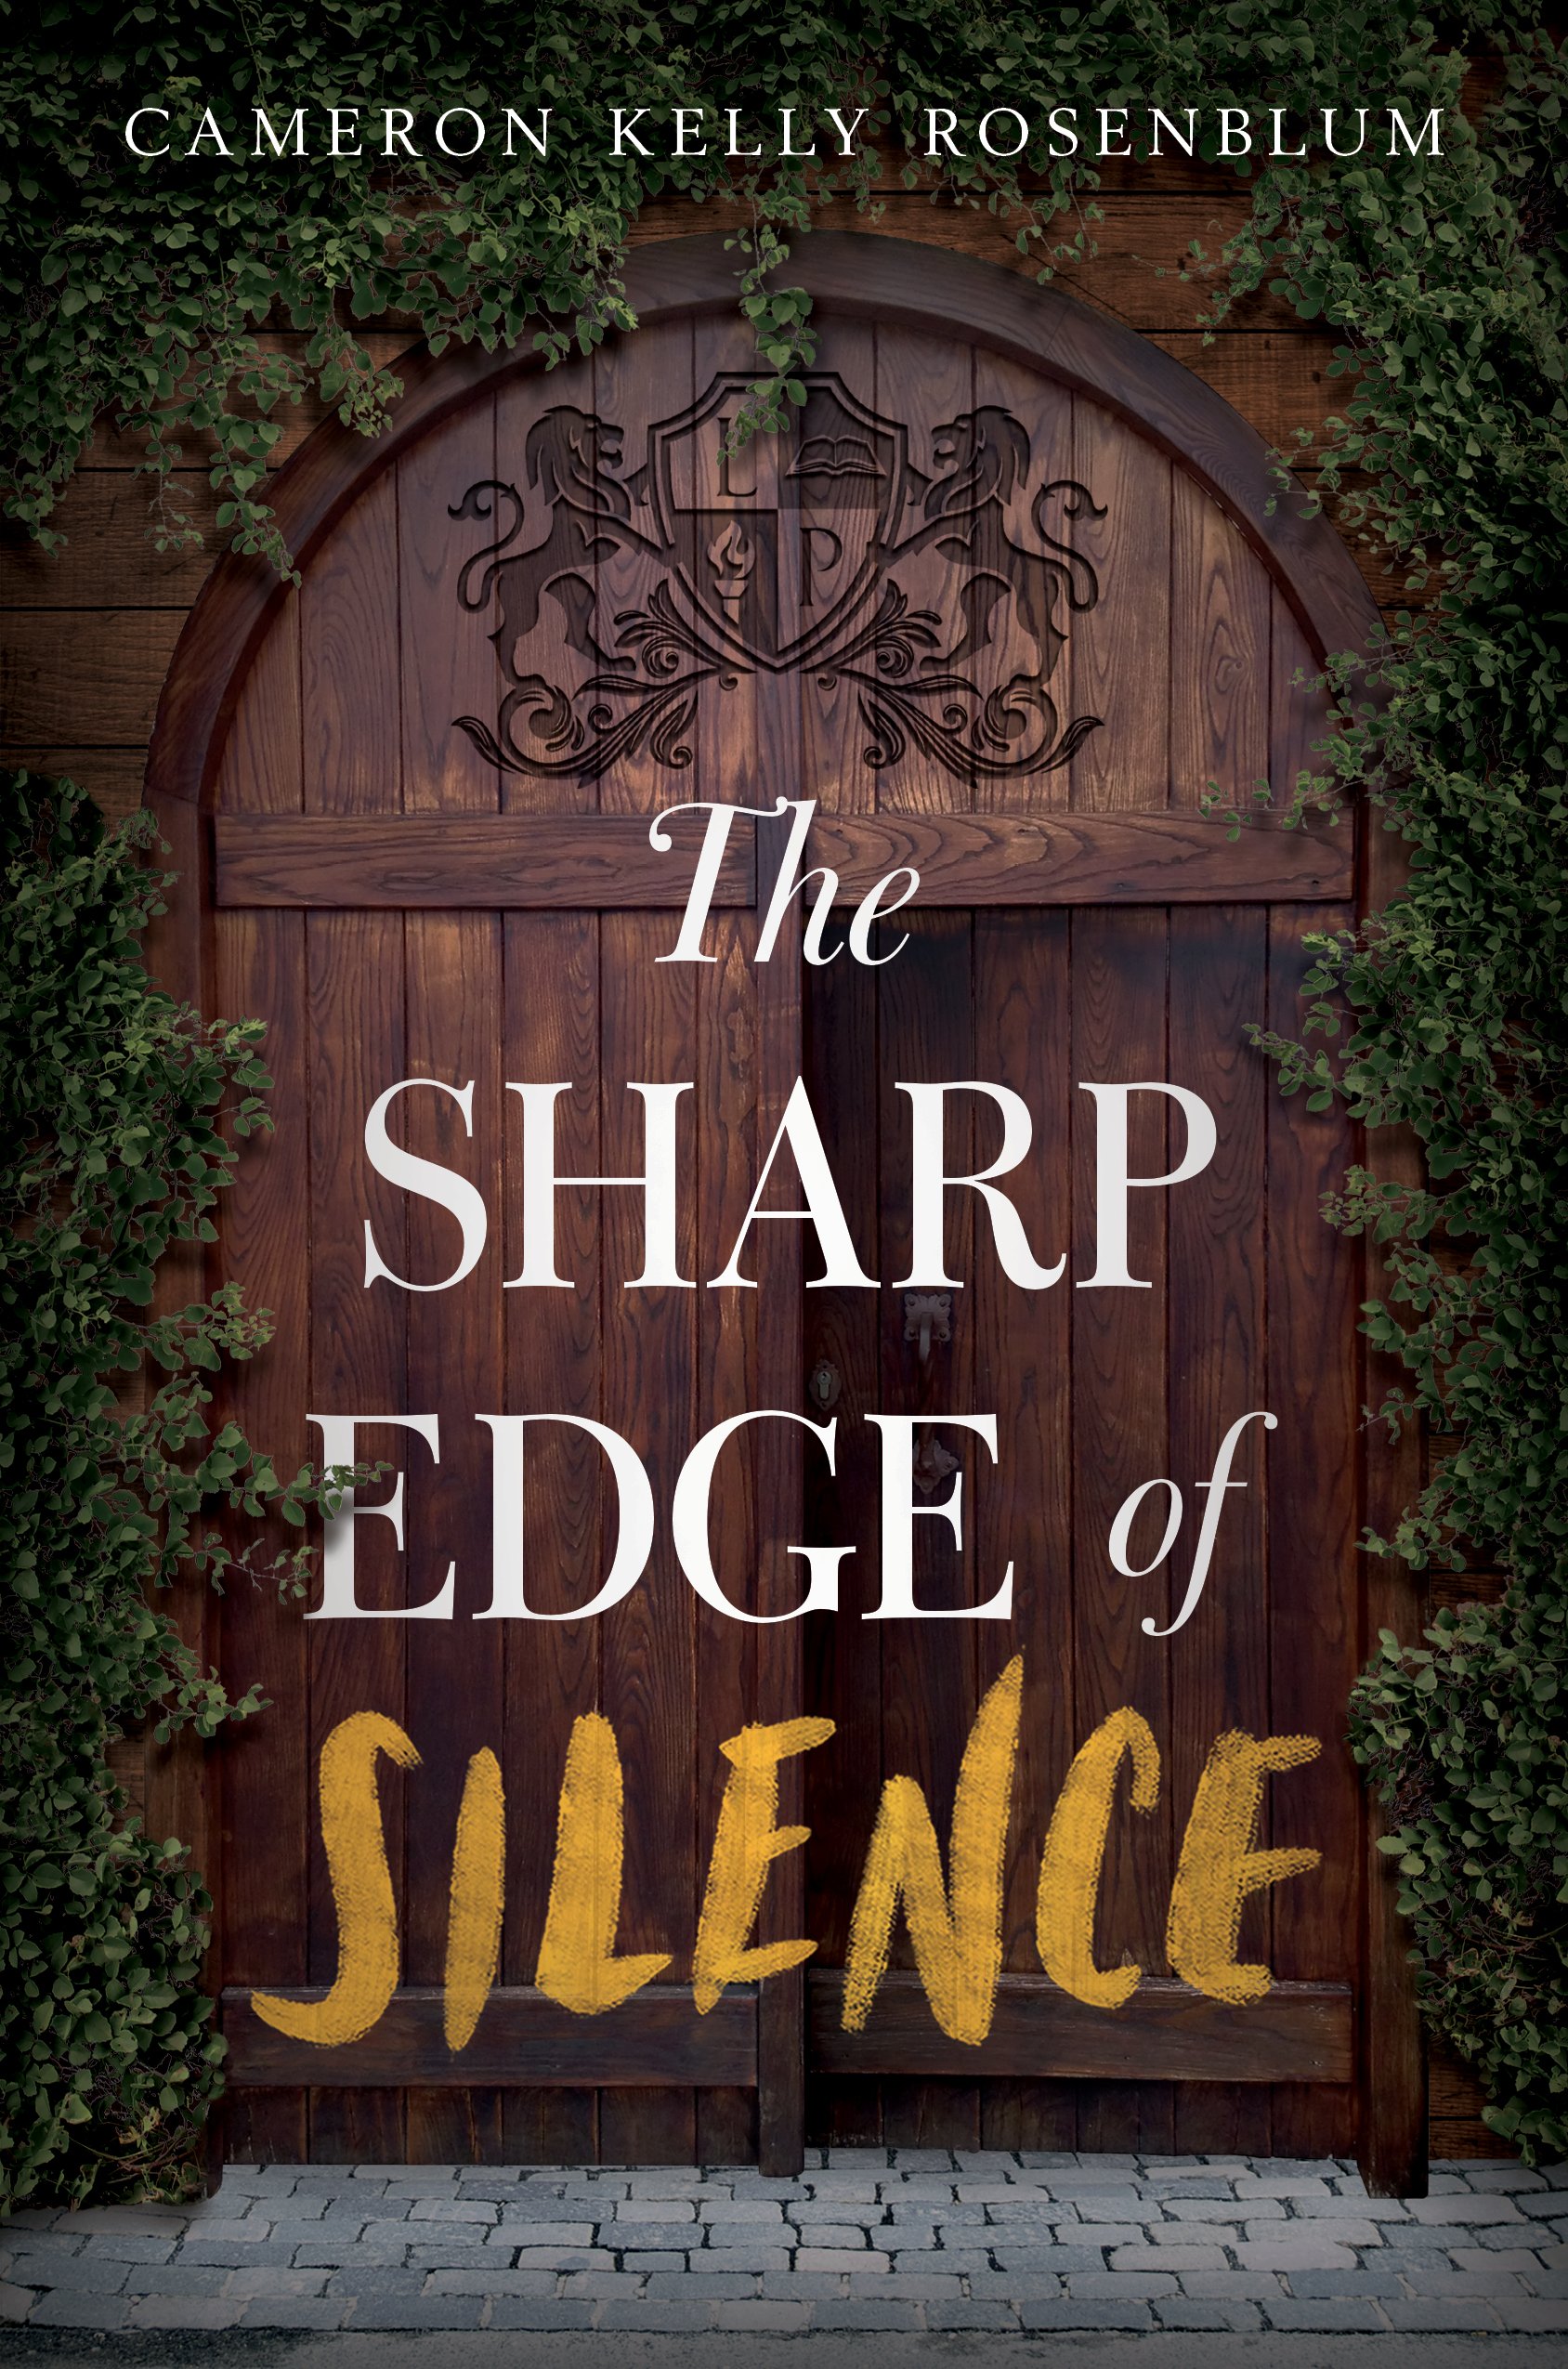 The Sharp Edge of Silence by Cameron Kelly Rosenblum